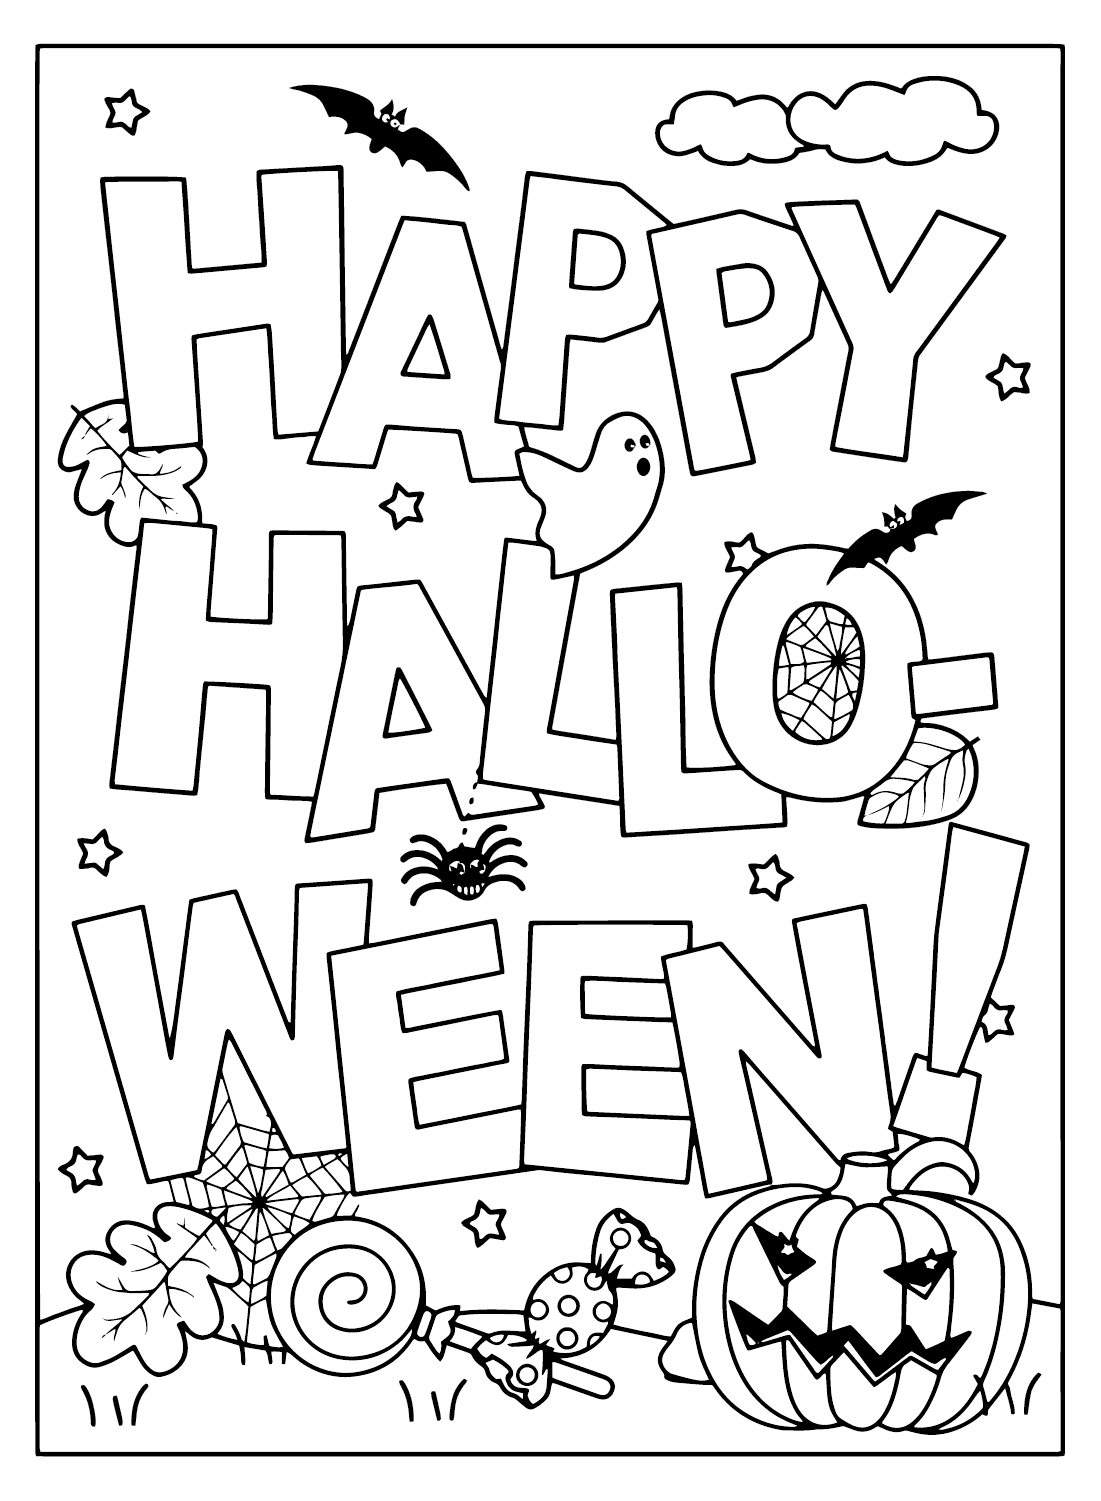 Tarjetas de Halloween Imagen para colorear de Tarjetas de Halloween